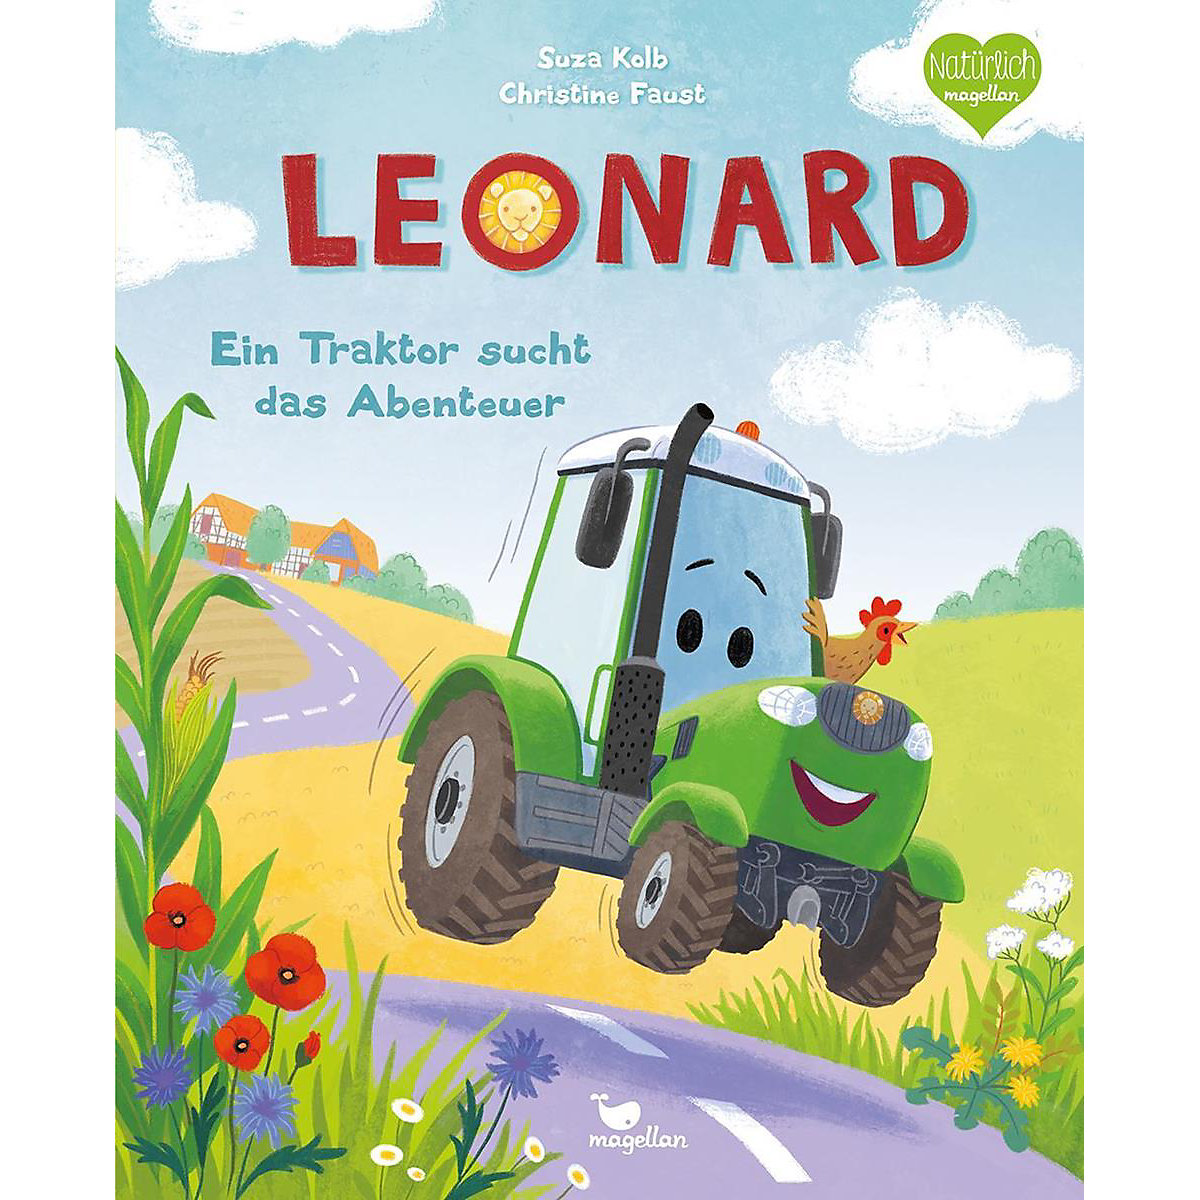 Leonard Ein Traktor sucht das Abenteuer